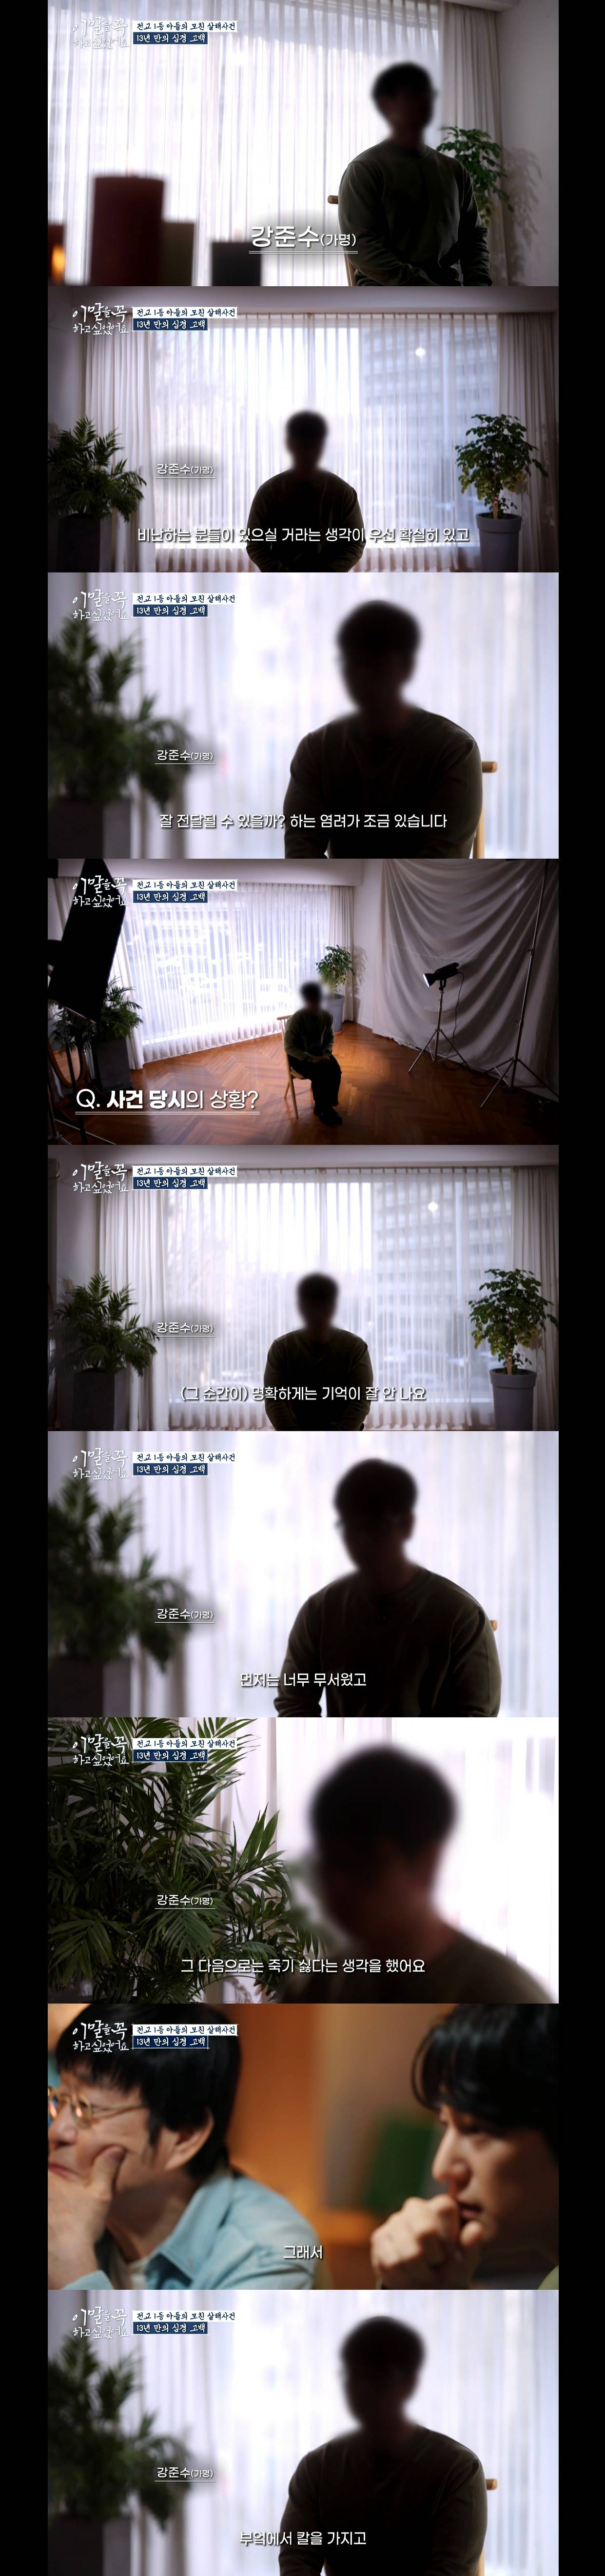 난리났다던 tvN 새 프로그램 살인 가해자 인터뷰 캡쳐.jpg | 인스티즈